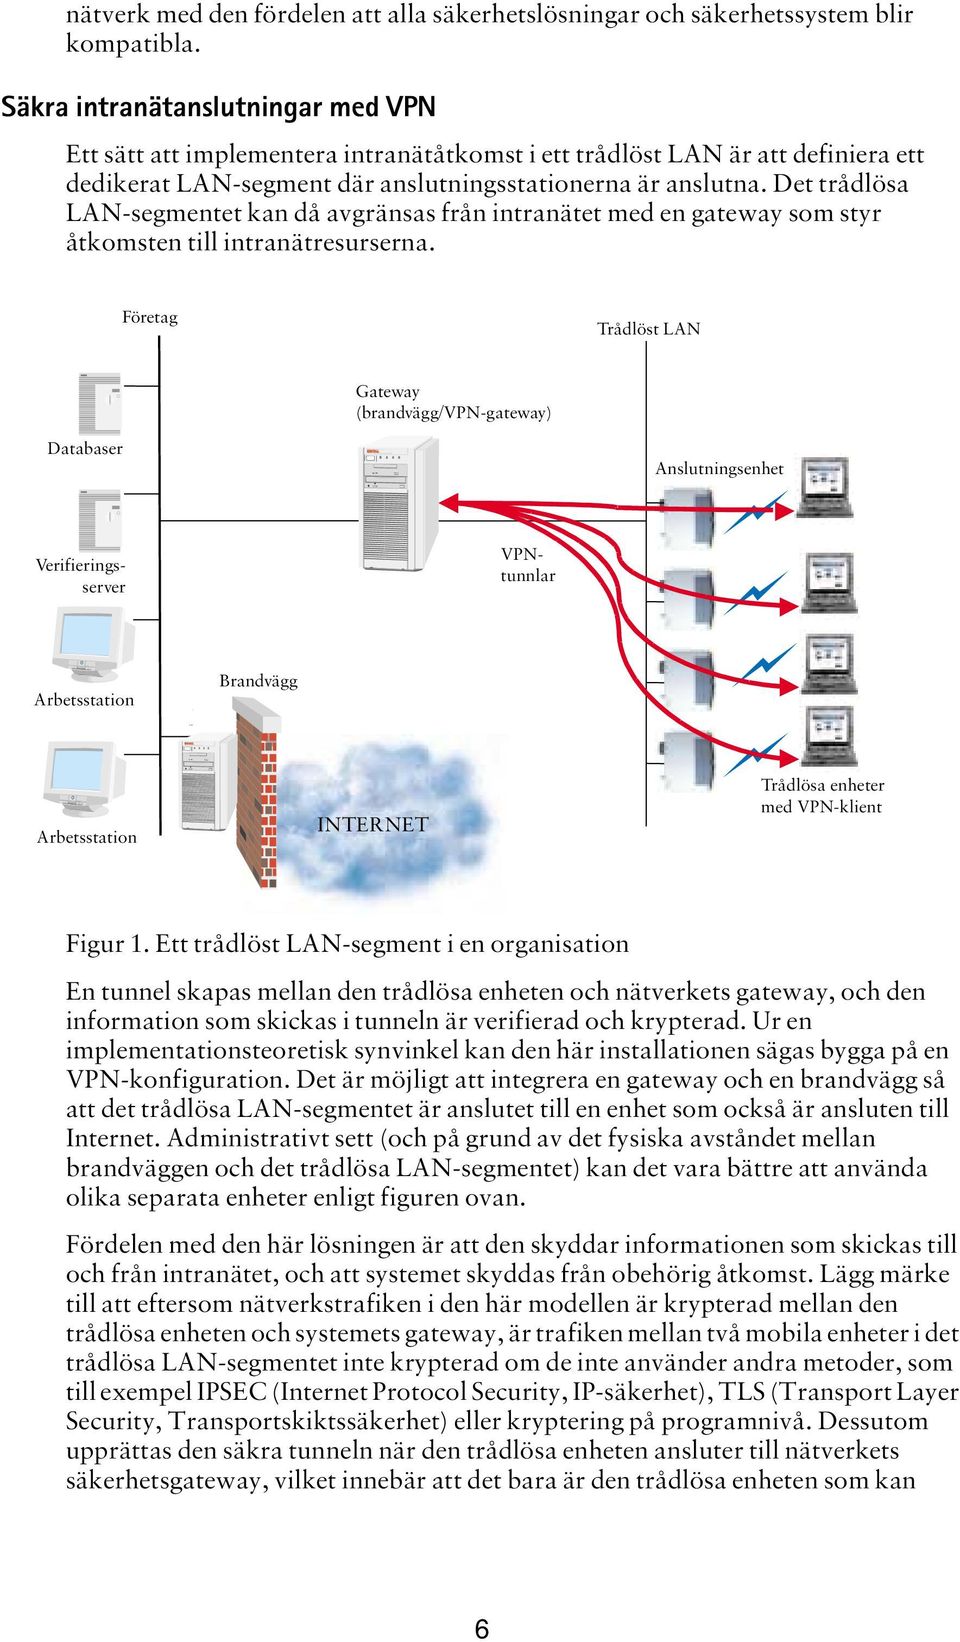 Det trådlösa LAN-segmentet kan då avgränsas från intranätet med en gateway som styr åtkomsten till intranätresurserna.